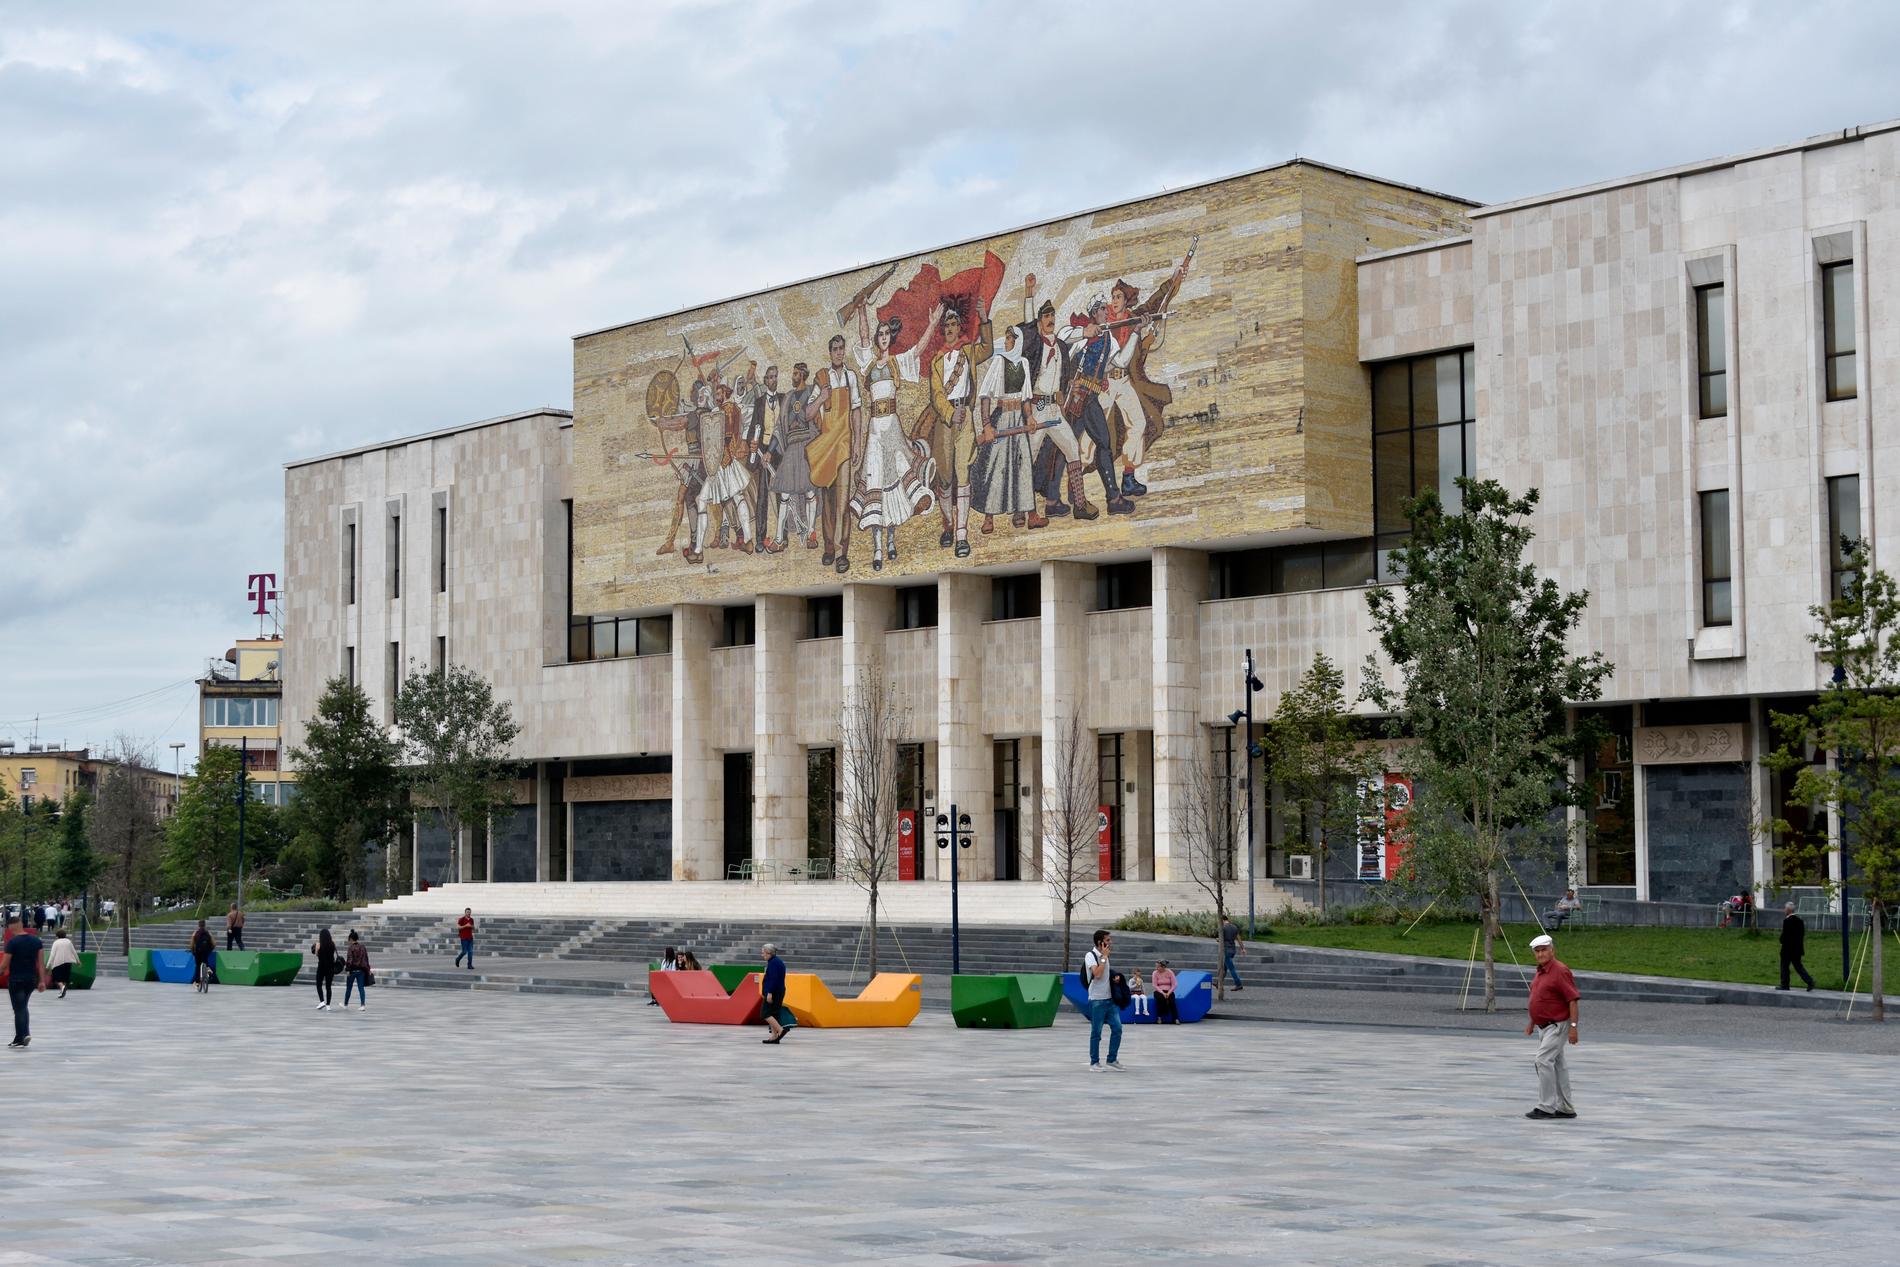 Kommunisttidens ideal gör sig påmind i väggmålningen på det albanska nationalbiblioteket vid Skanderbeg-torget i centrala Tirana.